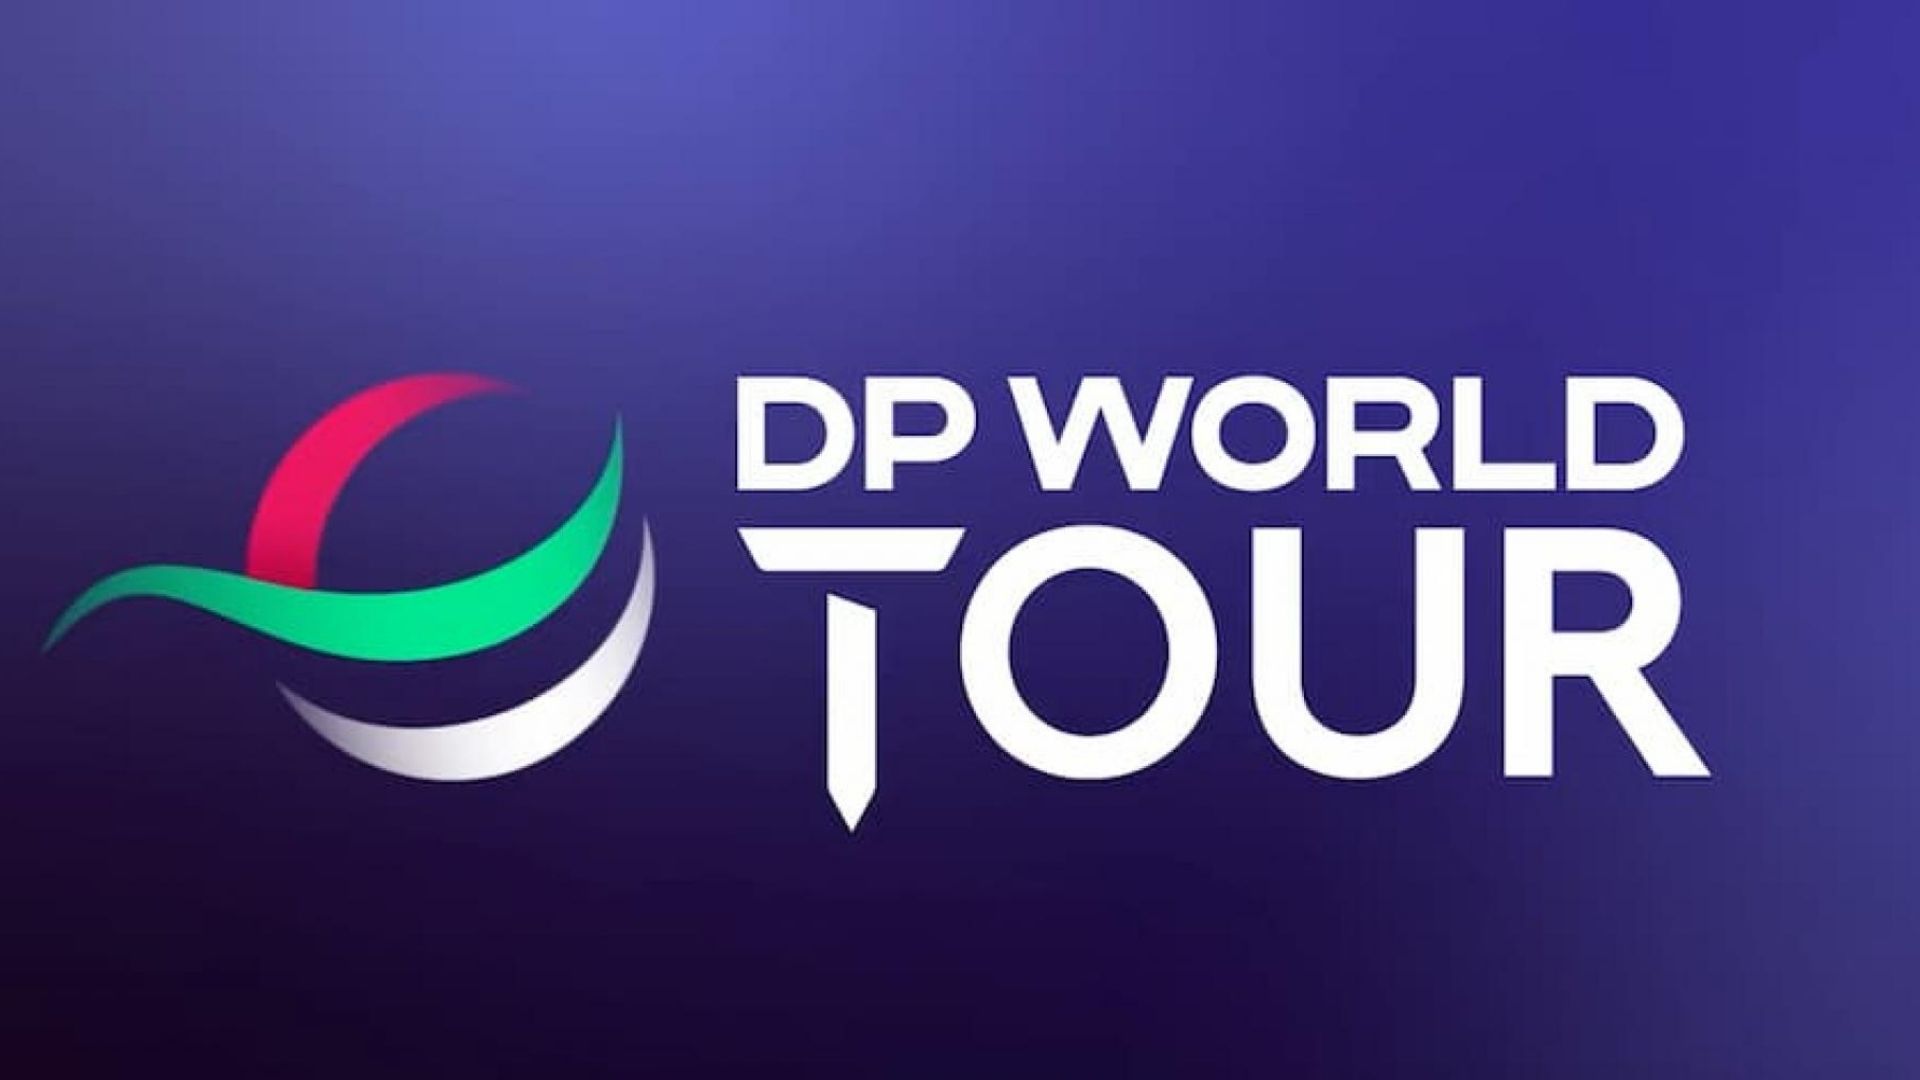 dp world tour live stream free